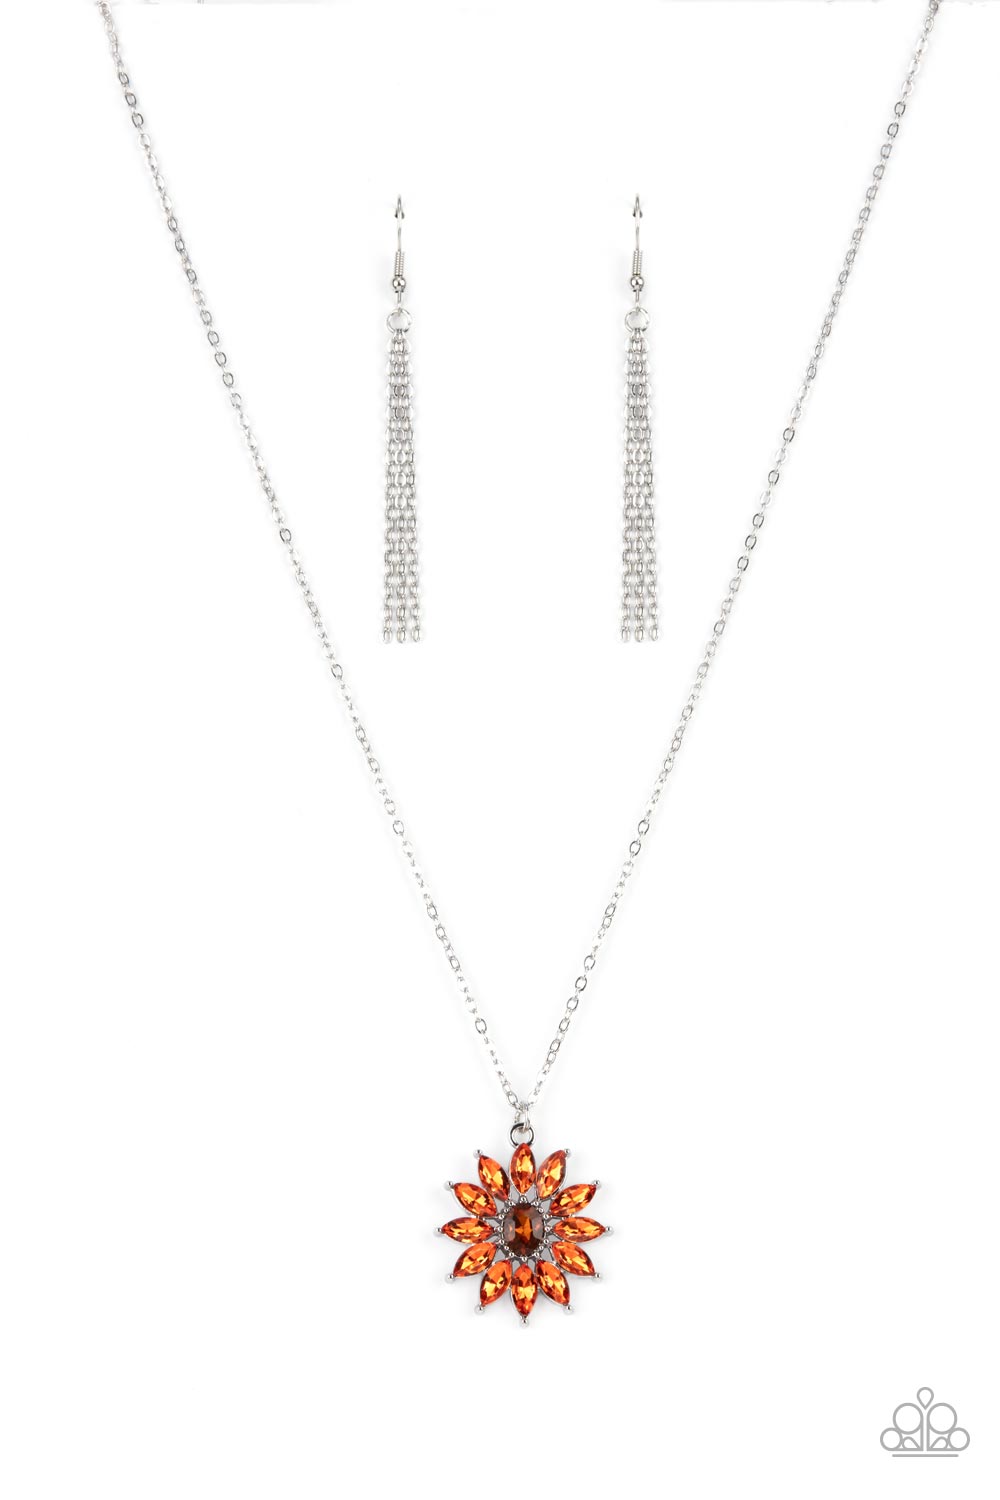 Formal Florals - Orange Necklace Set - Princess Glam Shop